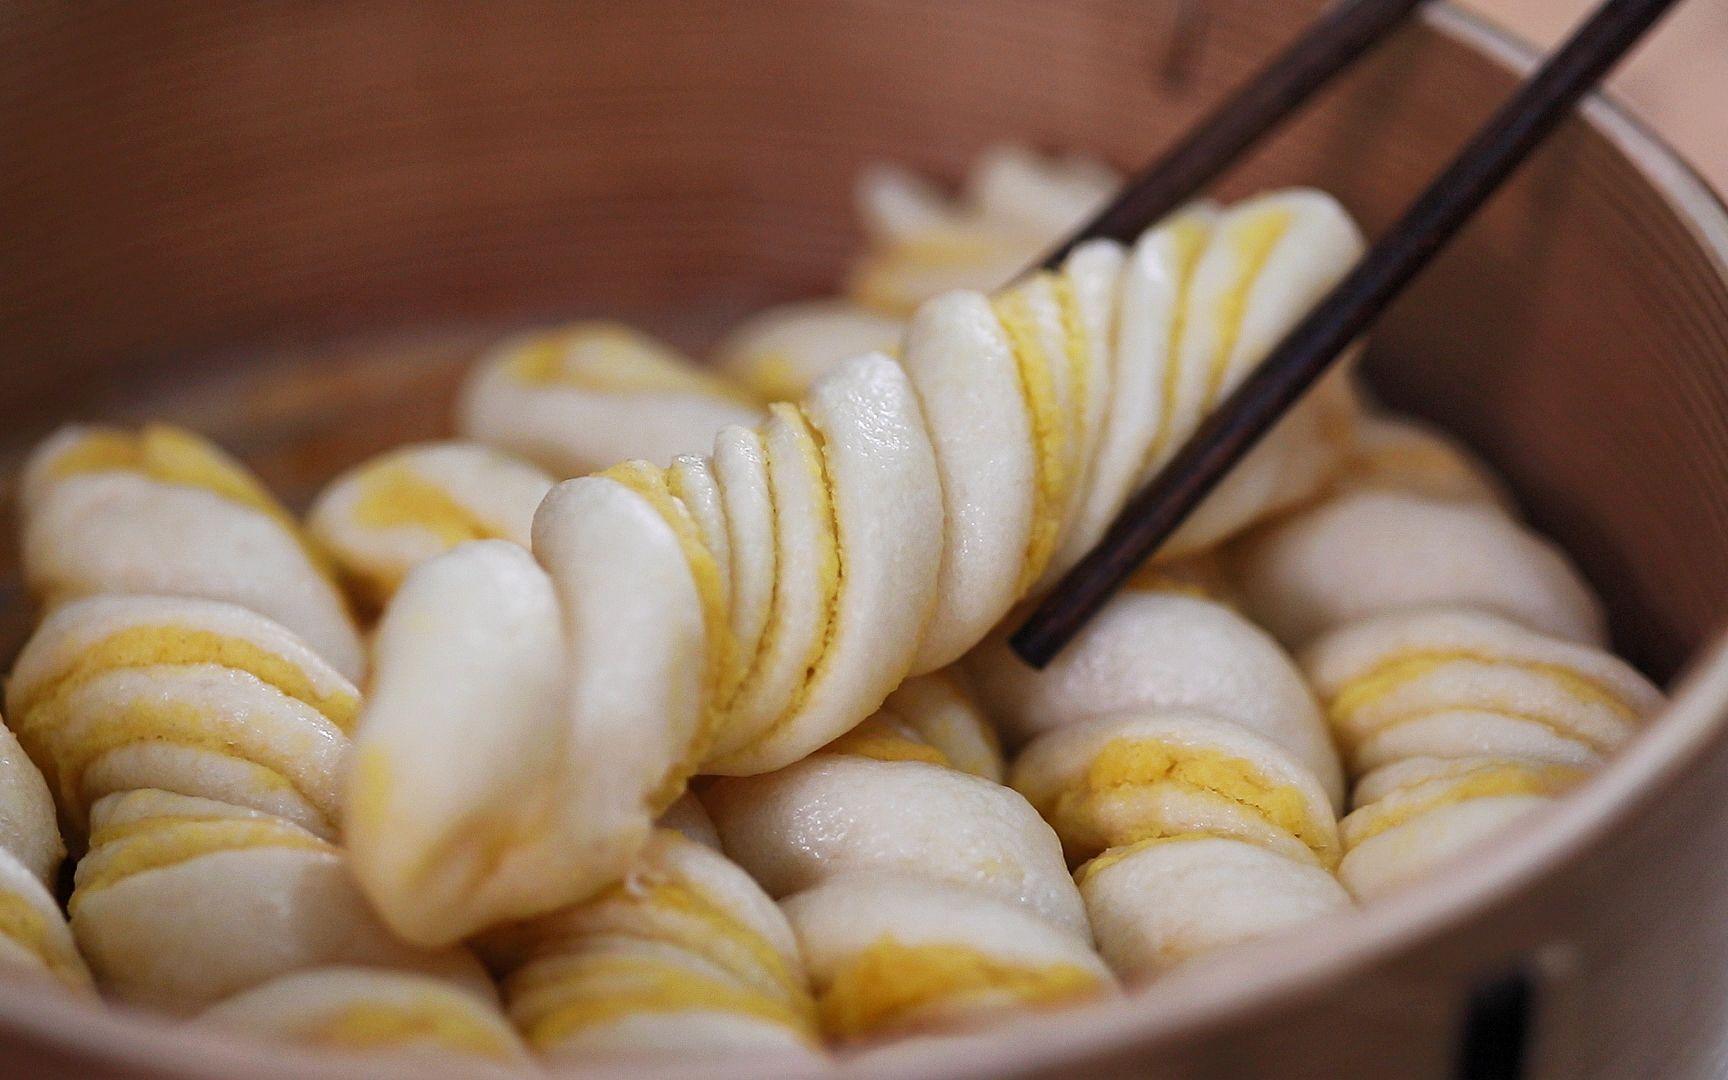 日式鸡蛋卷的做法_【图解】日式鸡蛋卷怎么做如何做好吃_日式鸡蛋卷家常做法大全_吉利娃_豆果美食